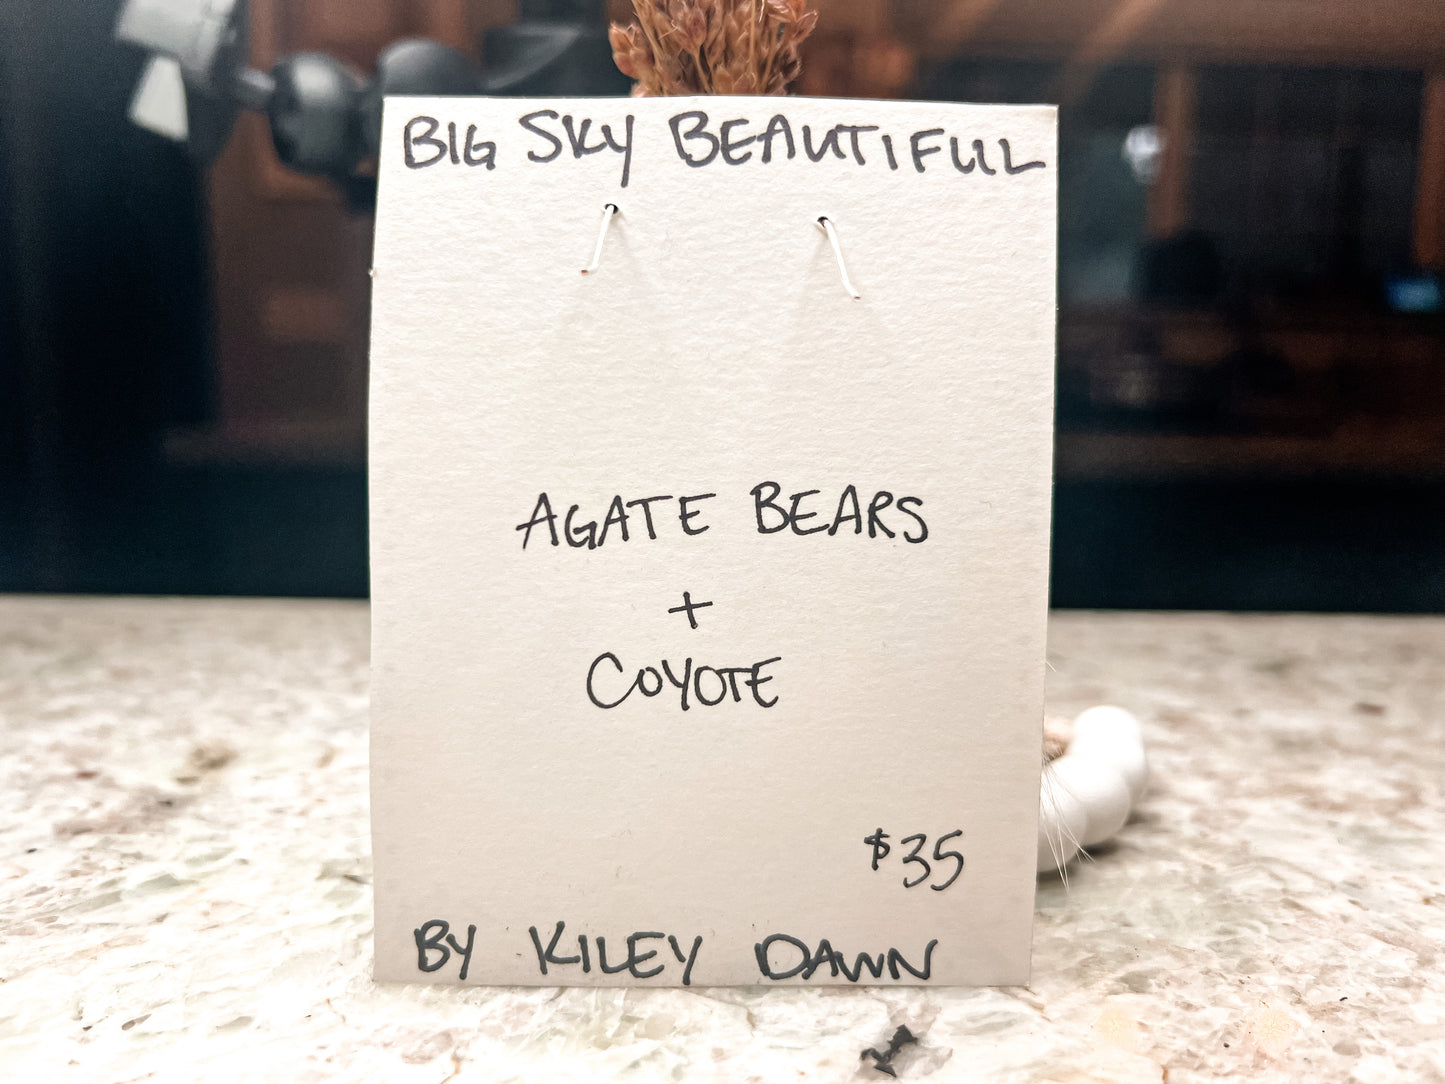 Agate Bears & Coyote